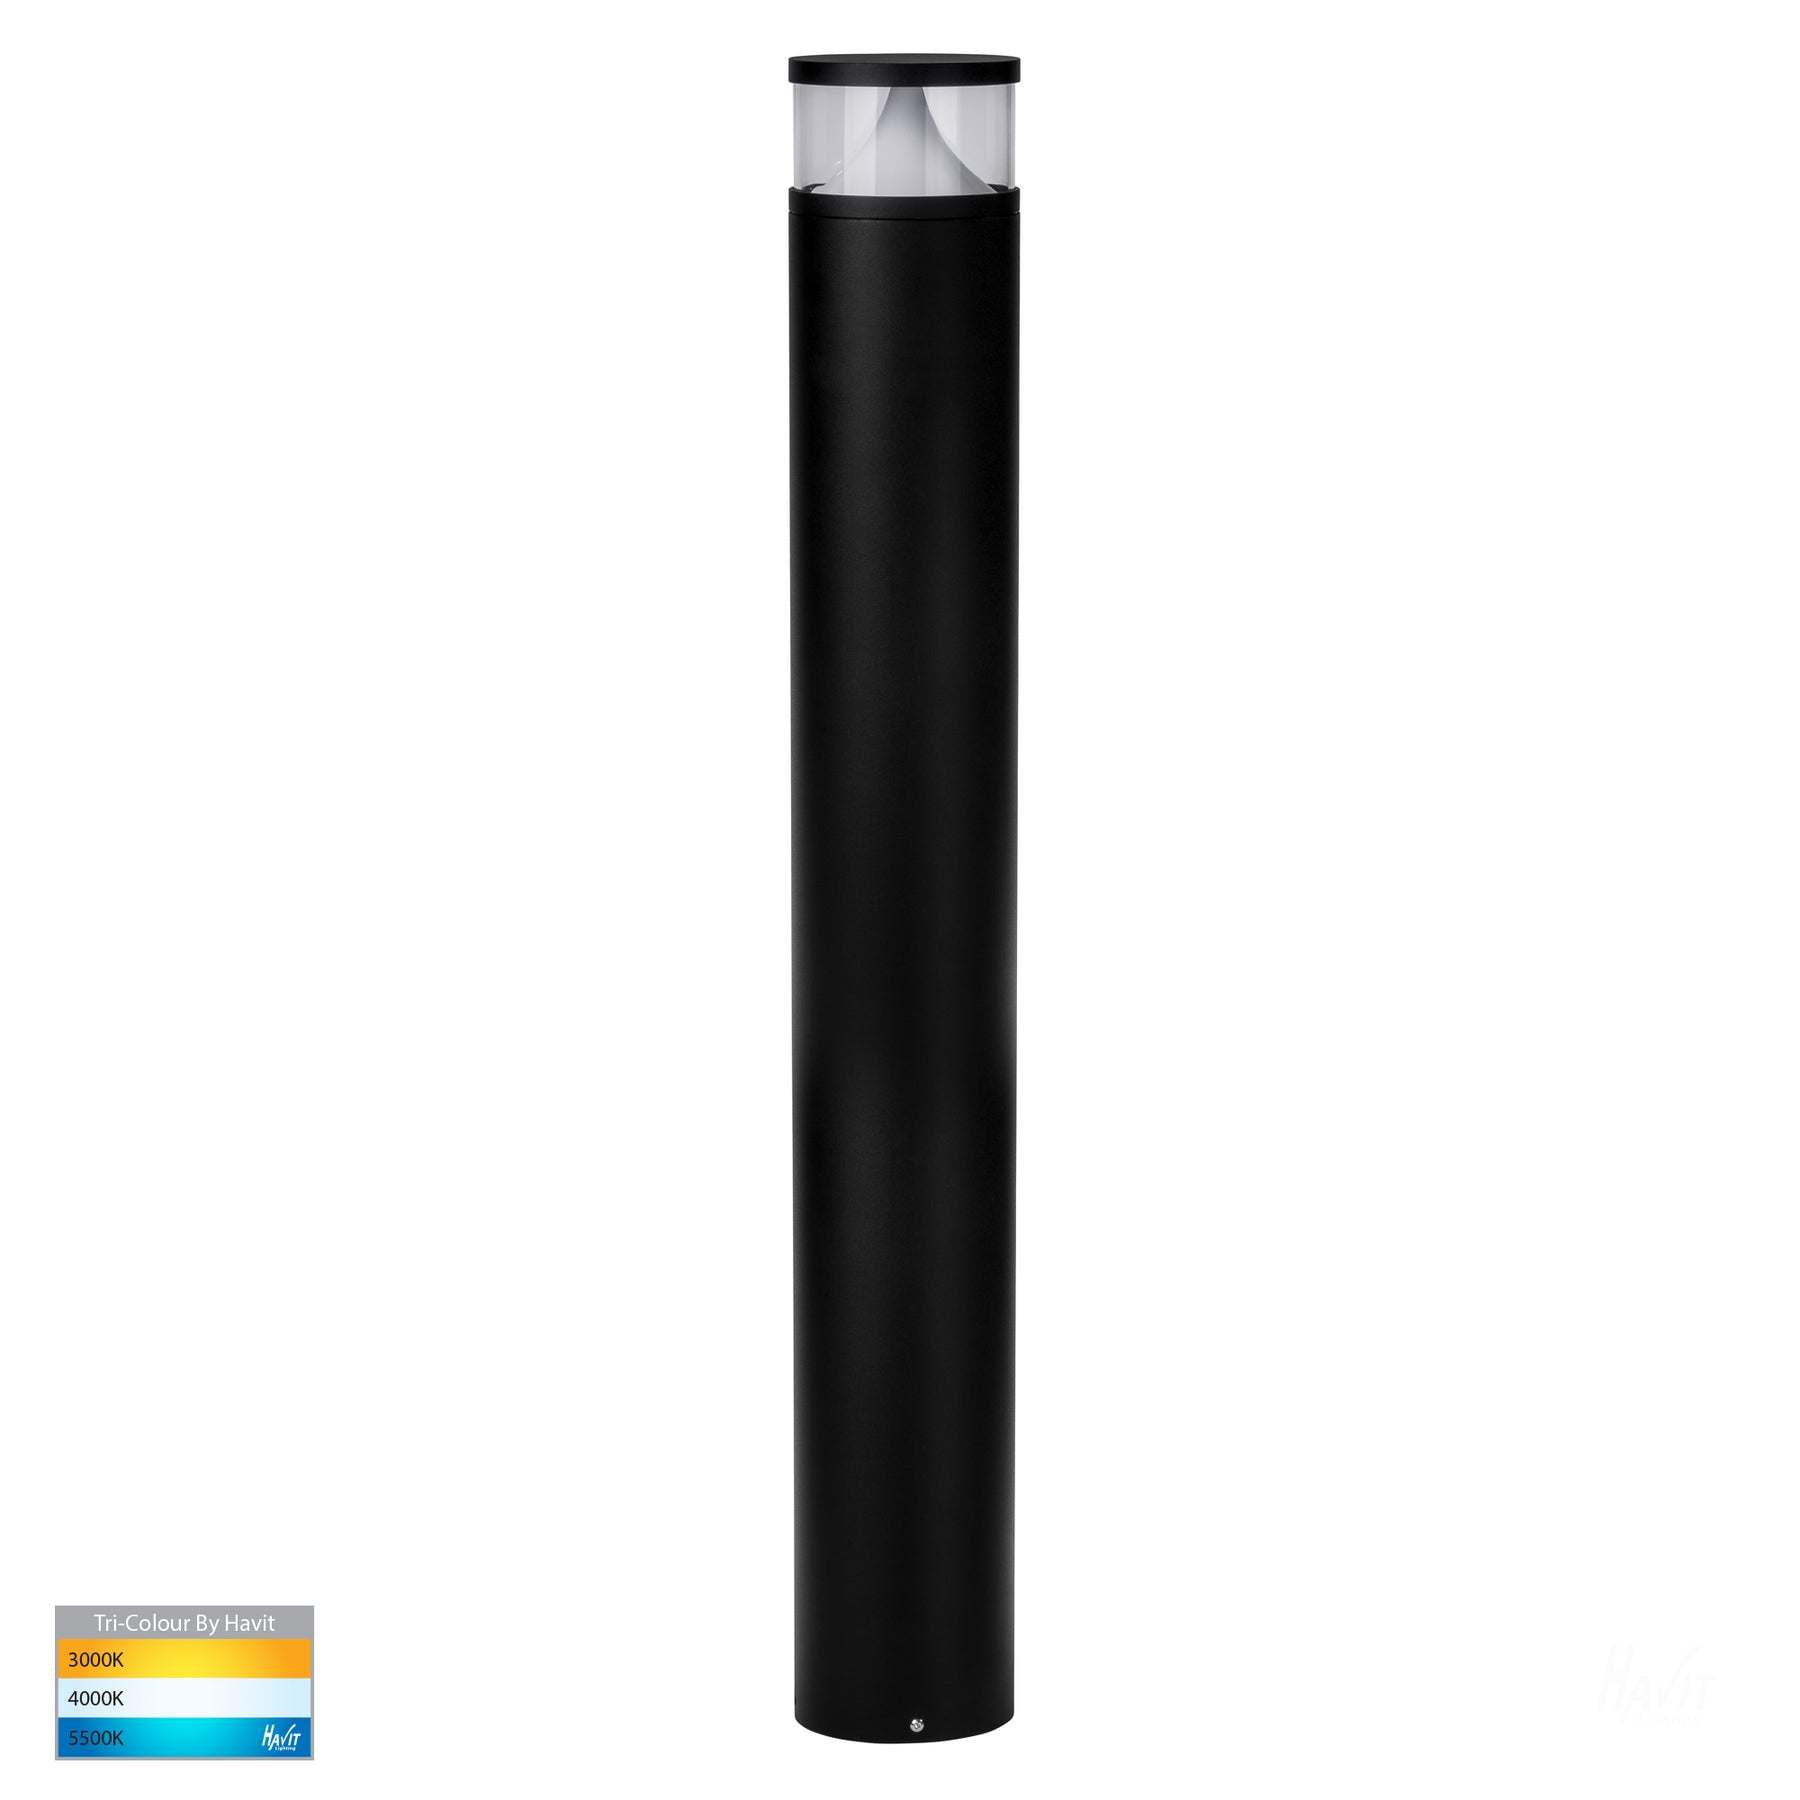 Divad Round Bollard Light H1000mm Black Aluminium 3CCT - HV1629T-BLK-240V-RND